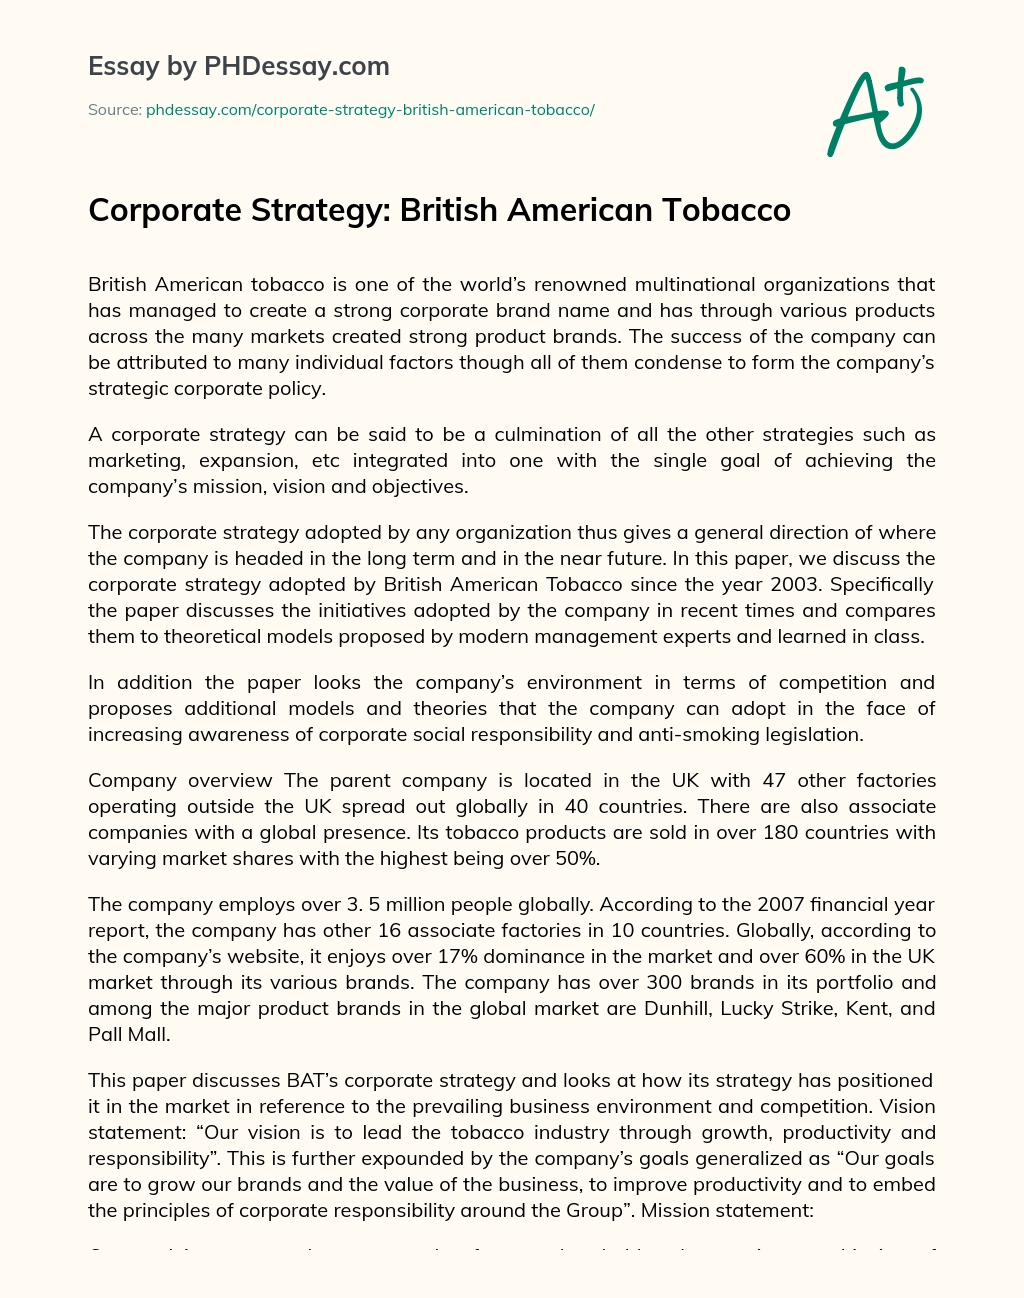 Corporate Strategy: British American Tobacco essay